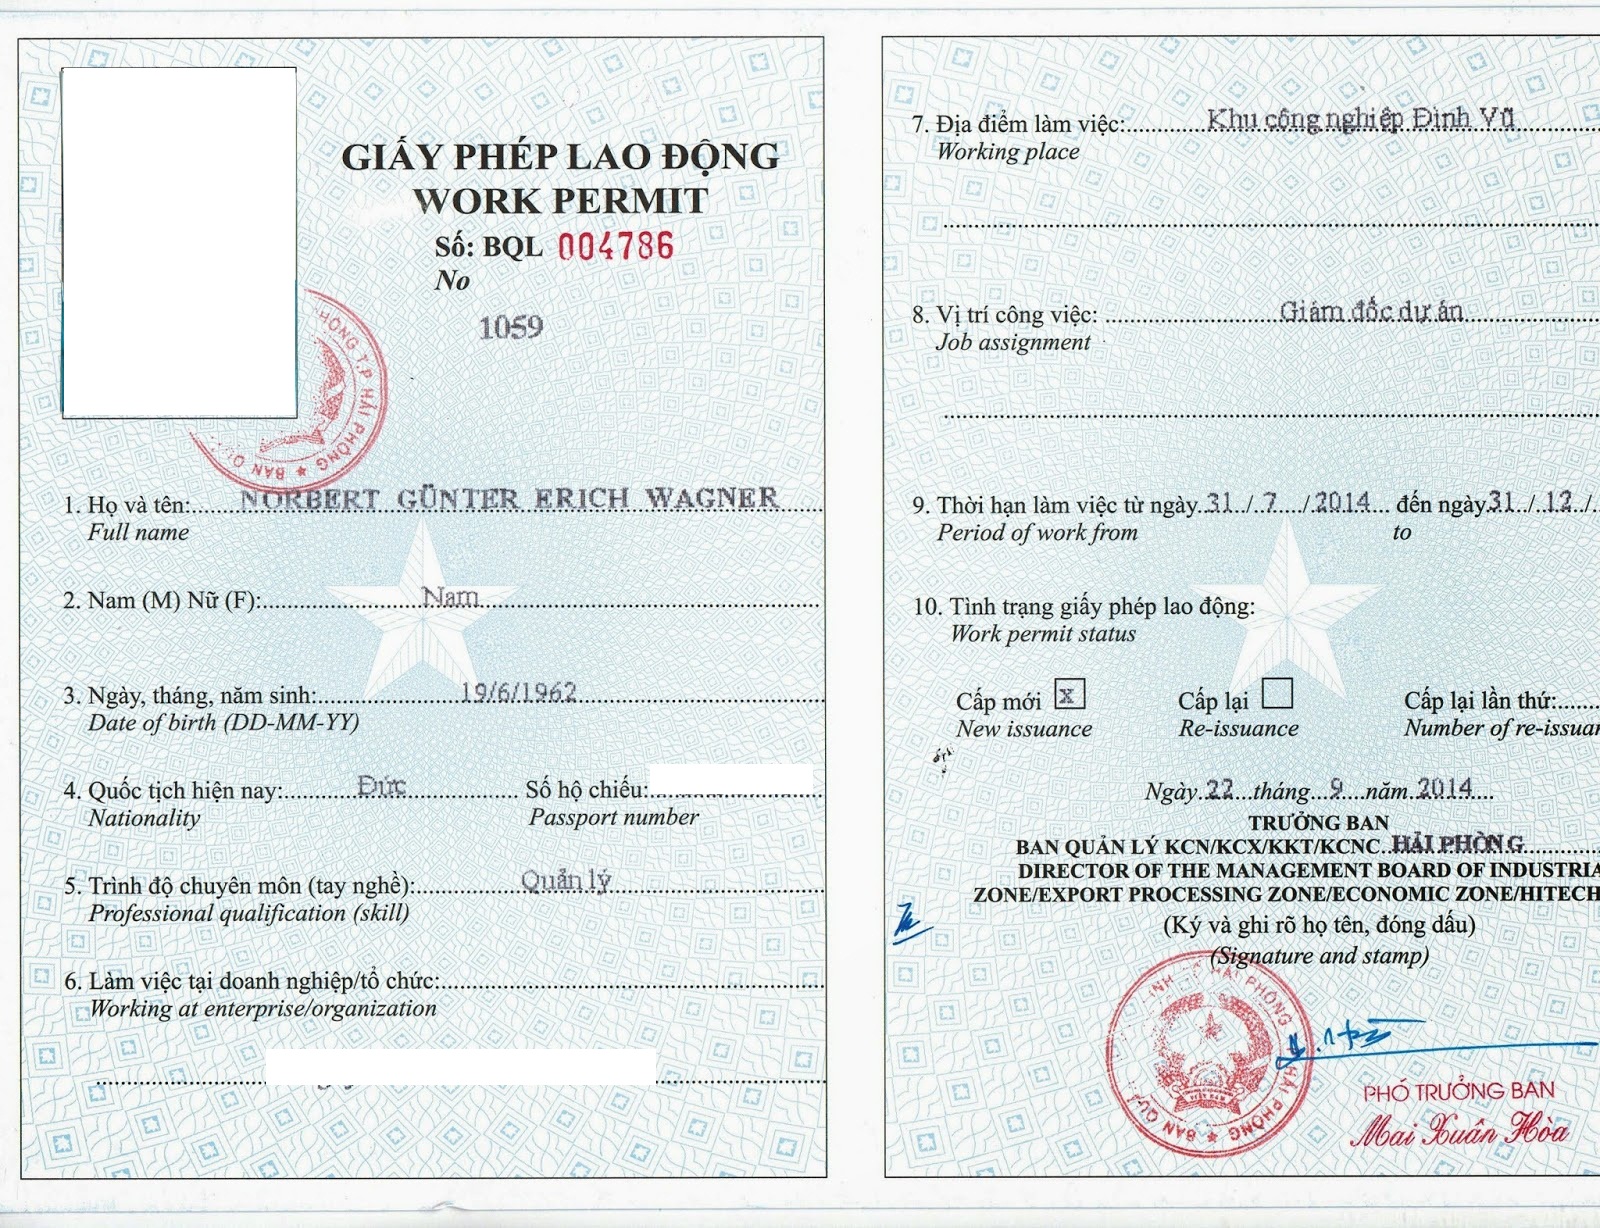 vietnam work permit